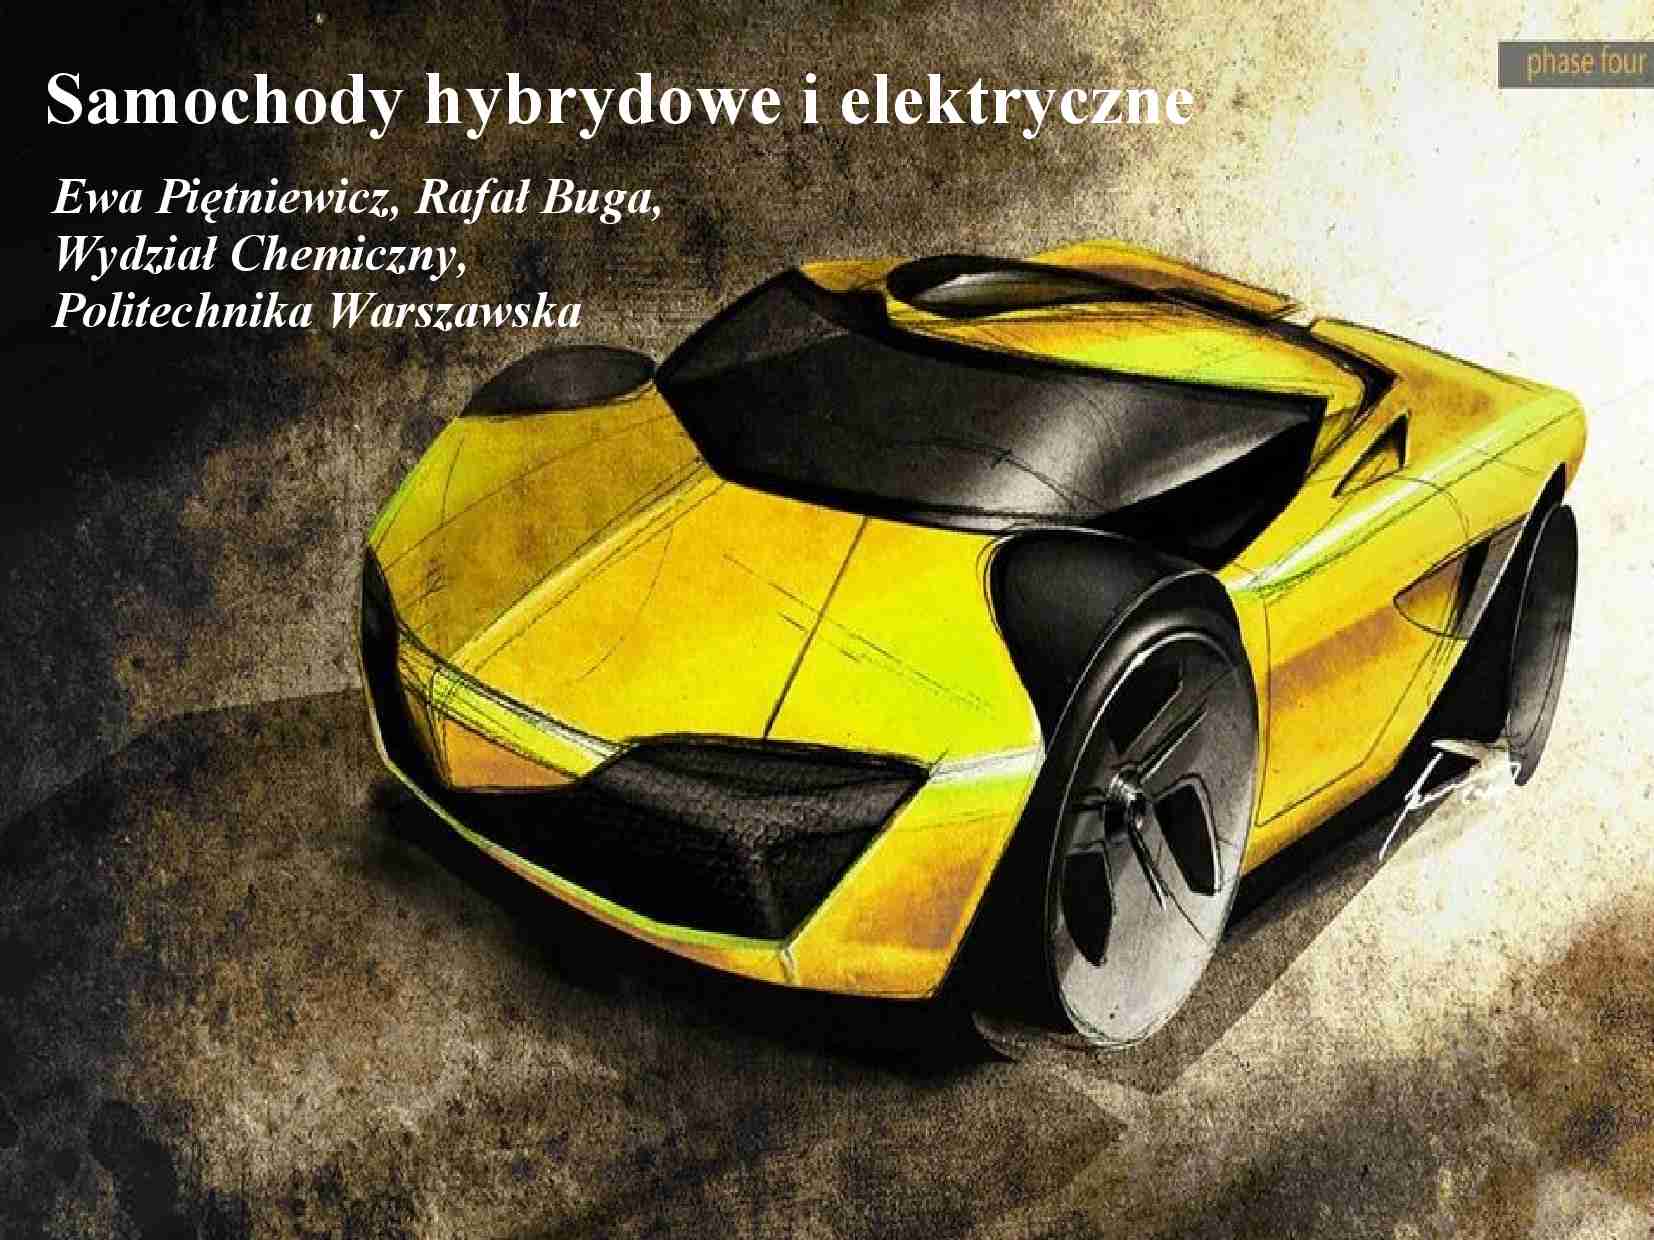 Samochody hybrydowe i elektryczne-opracowanie - strona 1